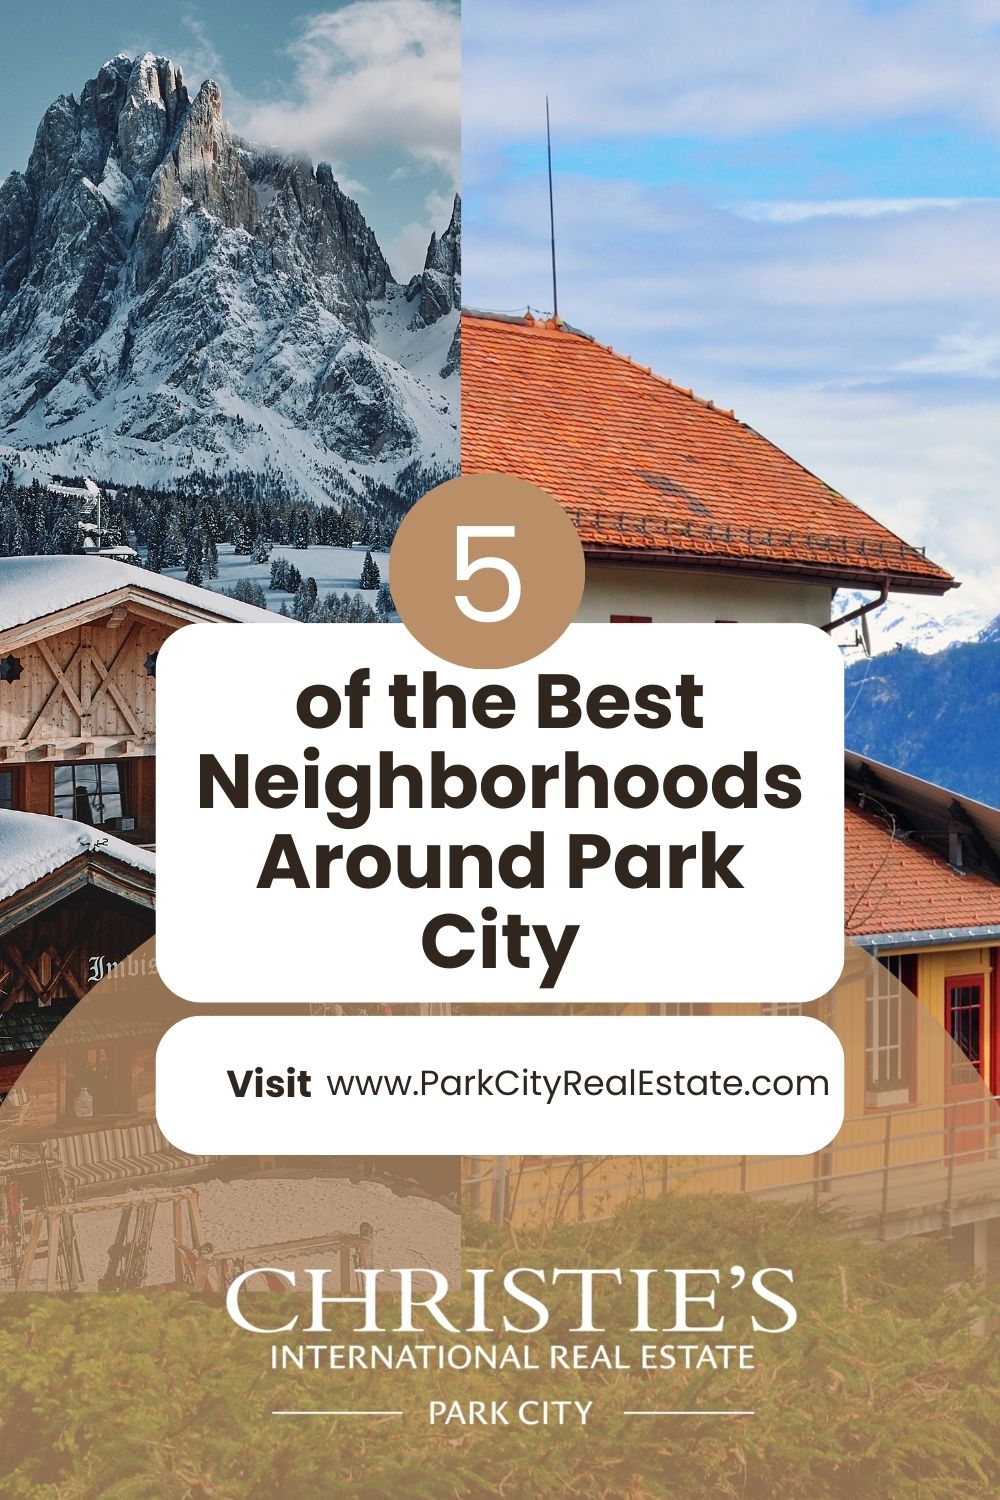 What are the best neighborhoods around Park City, Utah?